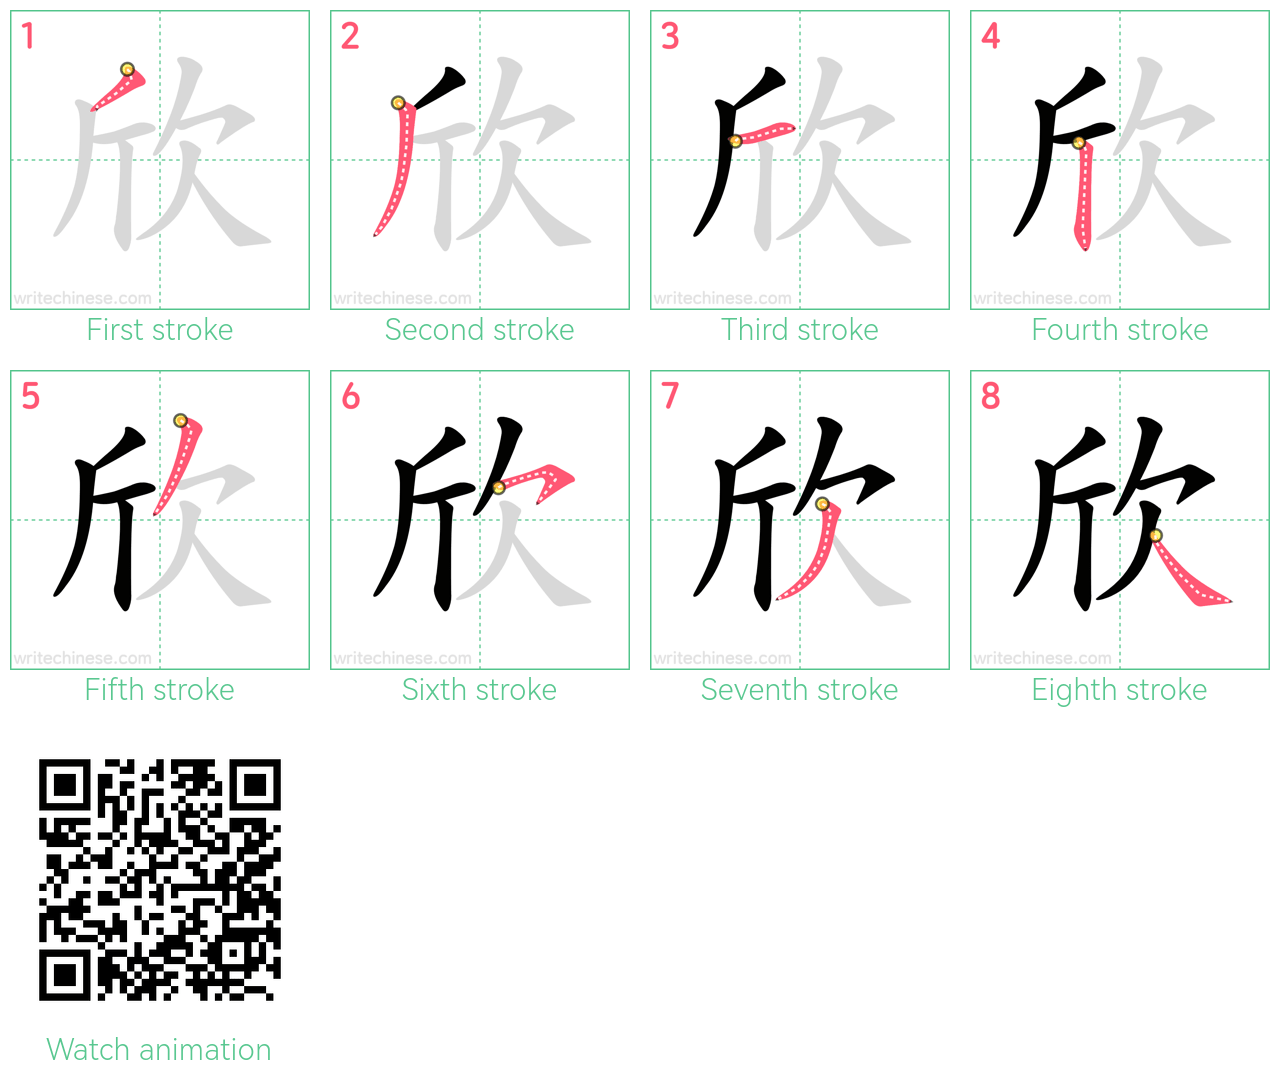 欣 step-by-step stroke order diagrams